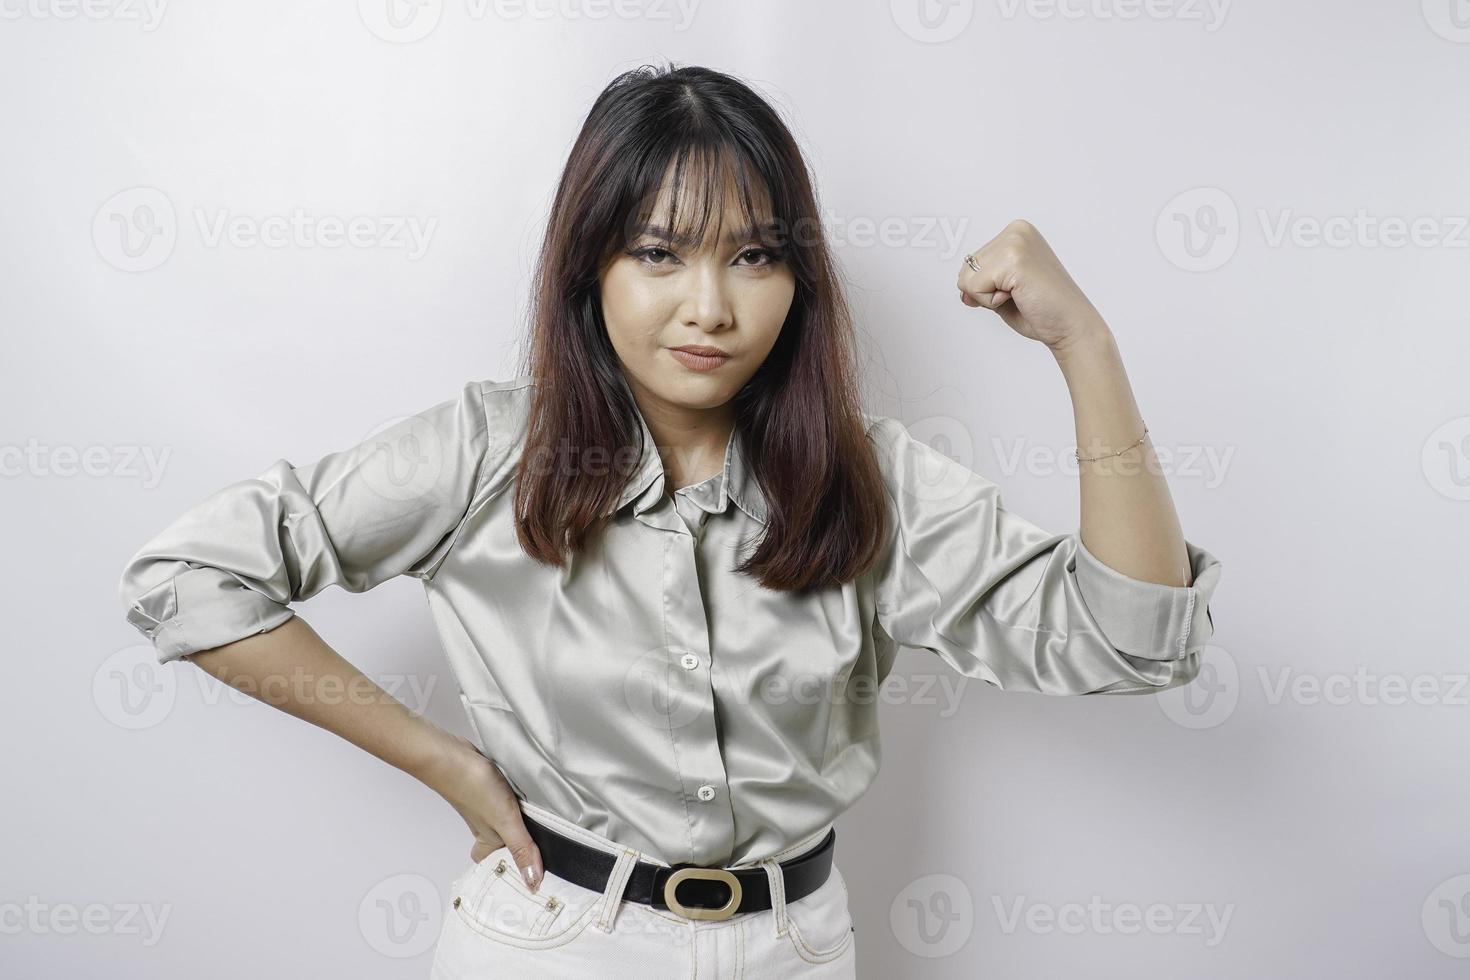 mujer asiática emocionada con una camisa verde salvia que muestra un gesto fuerte levantando los brazos y los músculos sonriendo con orgullo foto